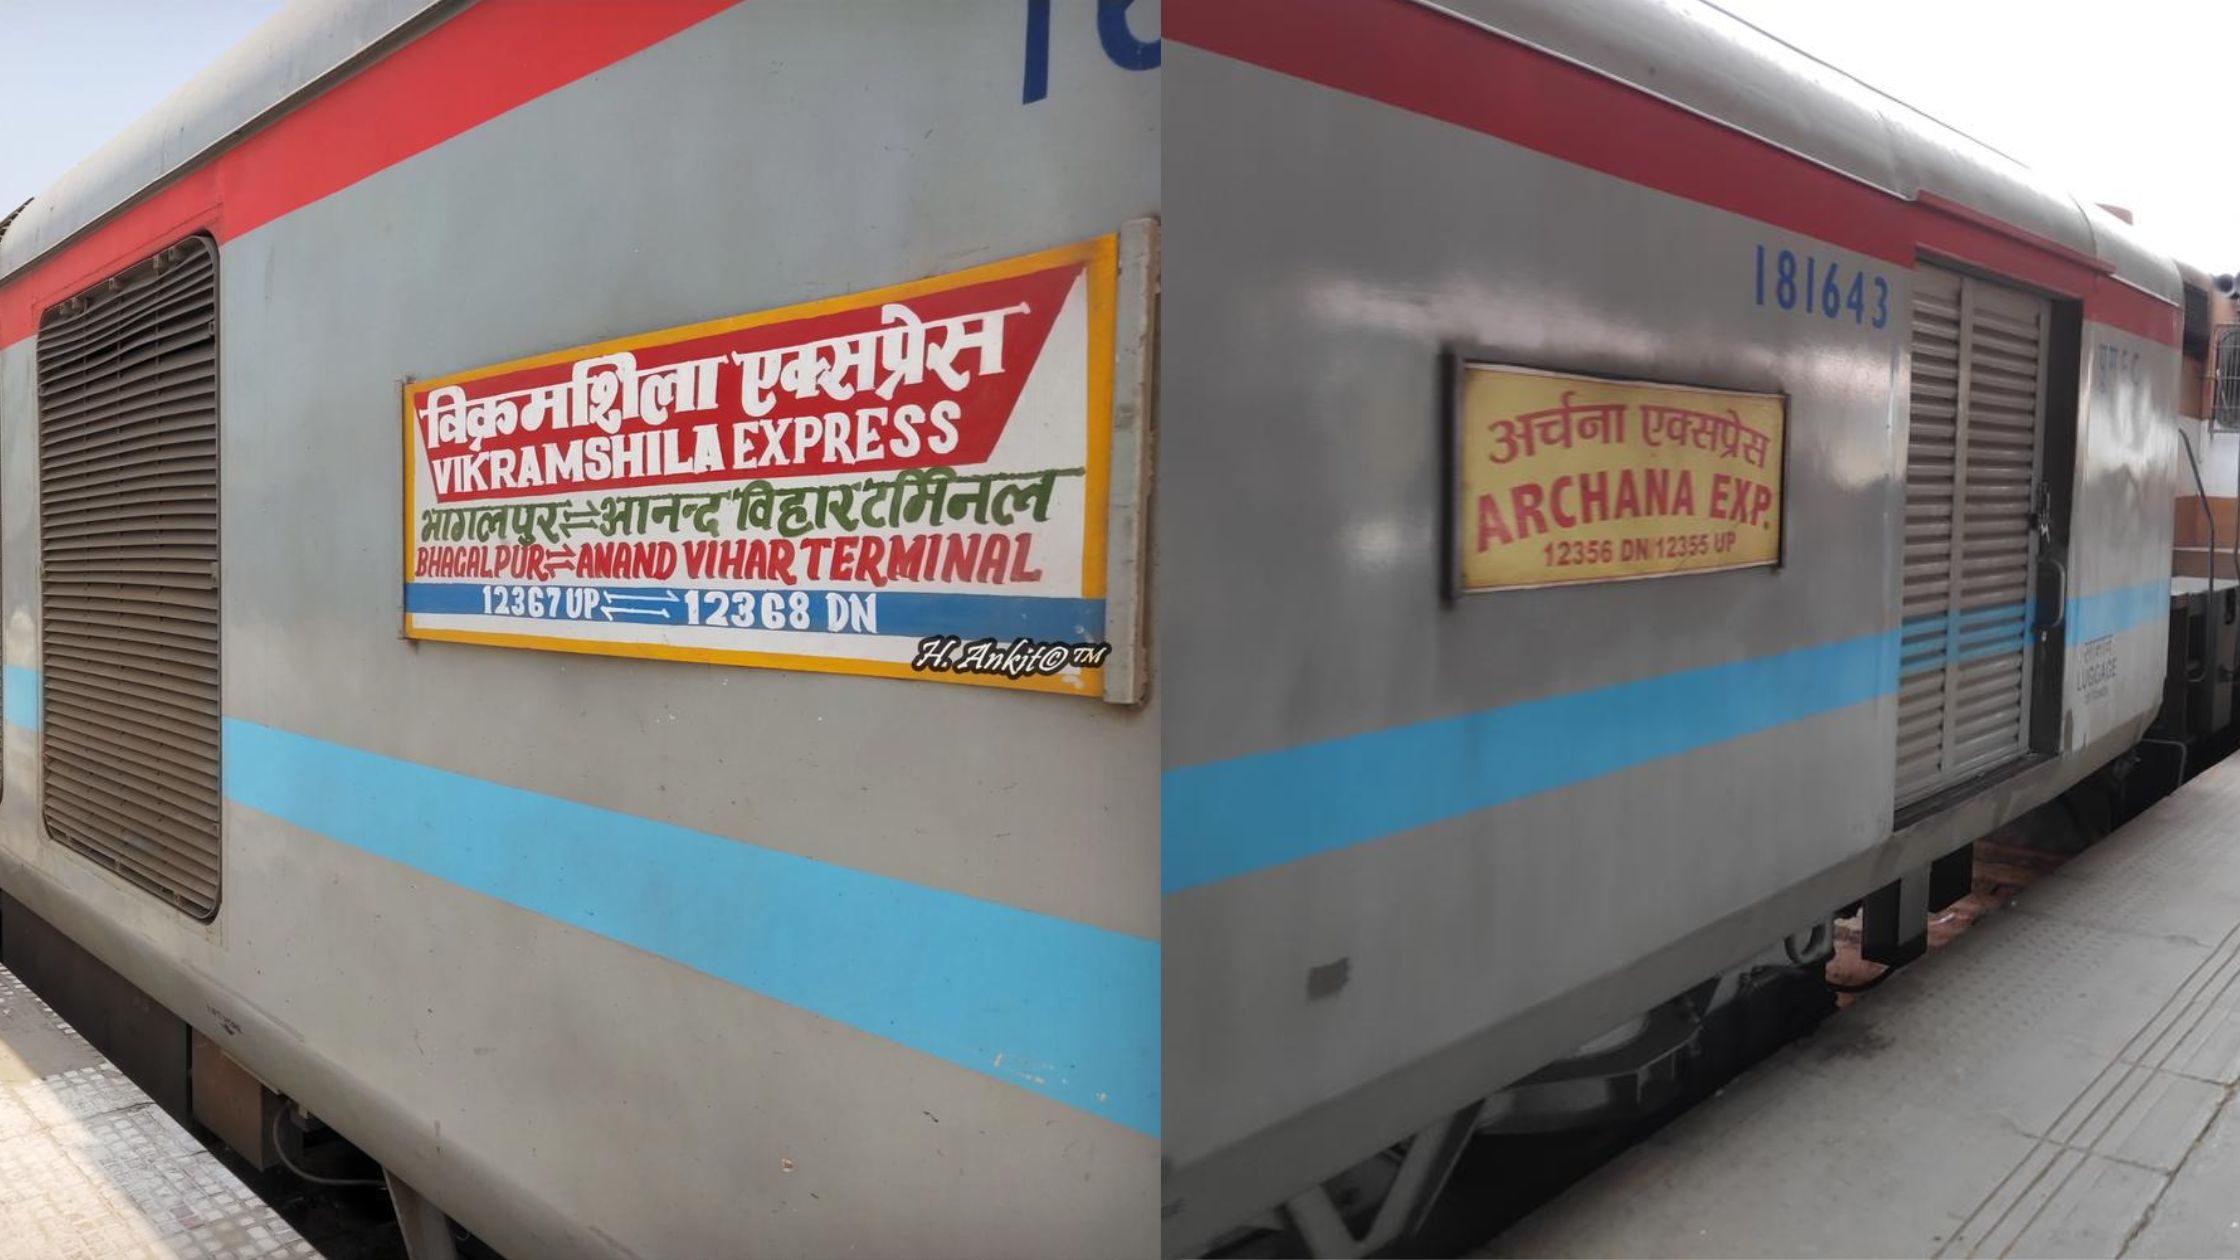 Vikramshila And Archana Express Stop At Ara